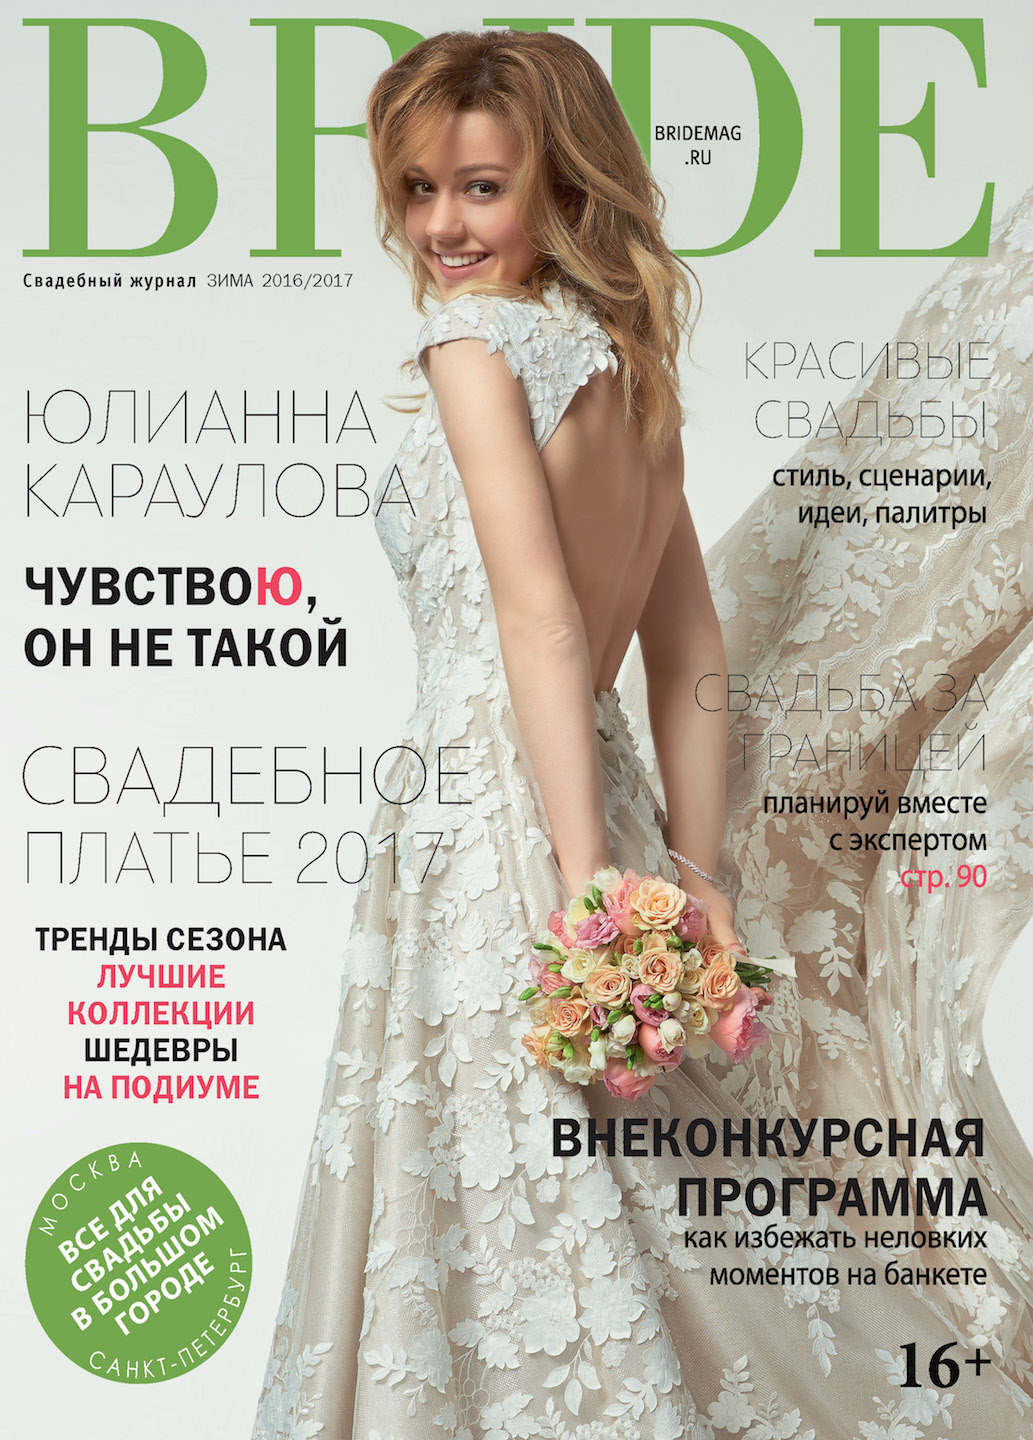 Свадебный журнал BRIDE. Зима 2016-17